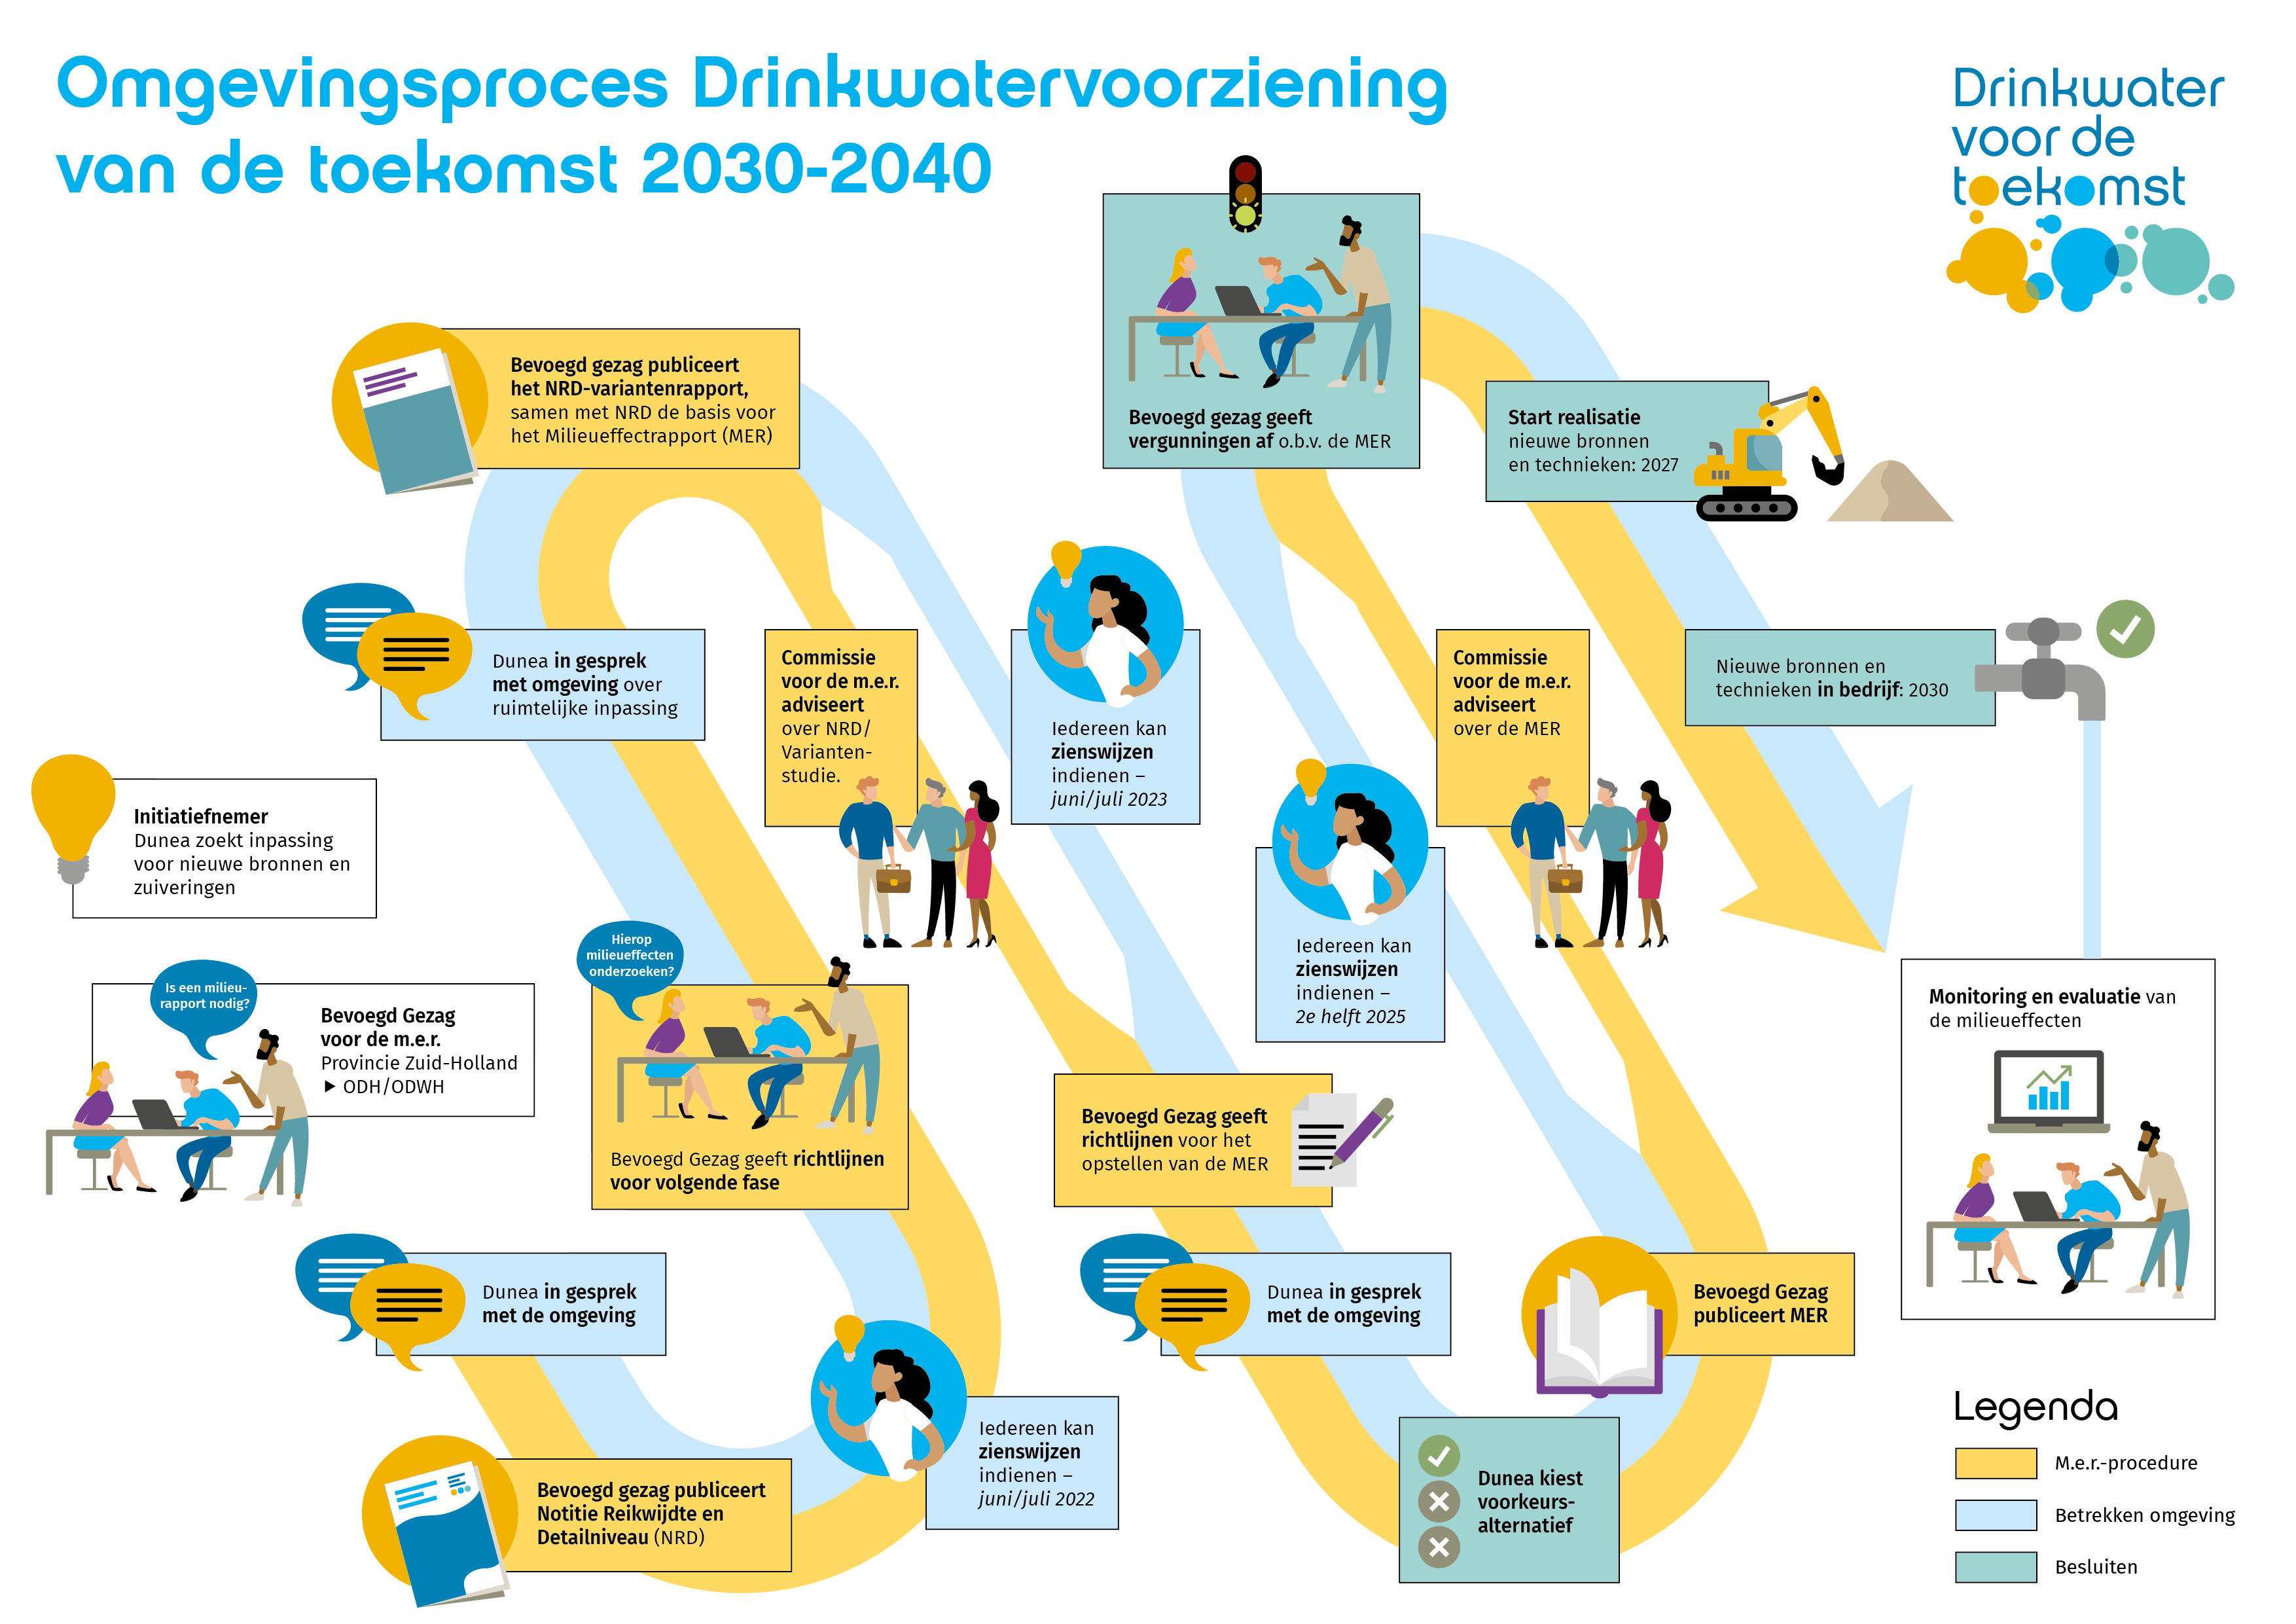 Drinkwater van de toekomst - infographic procedure